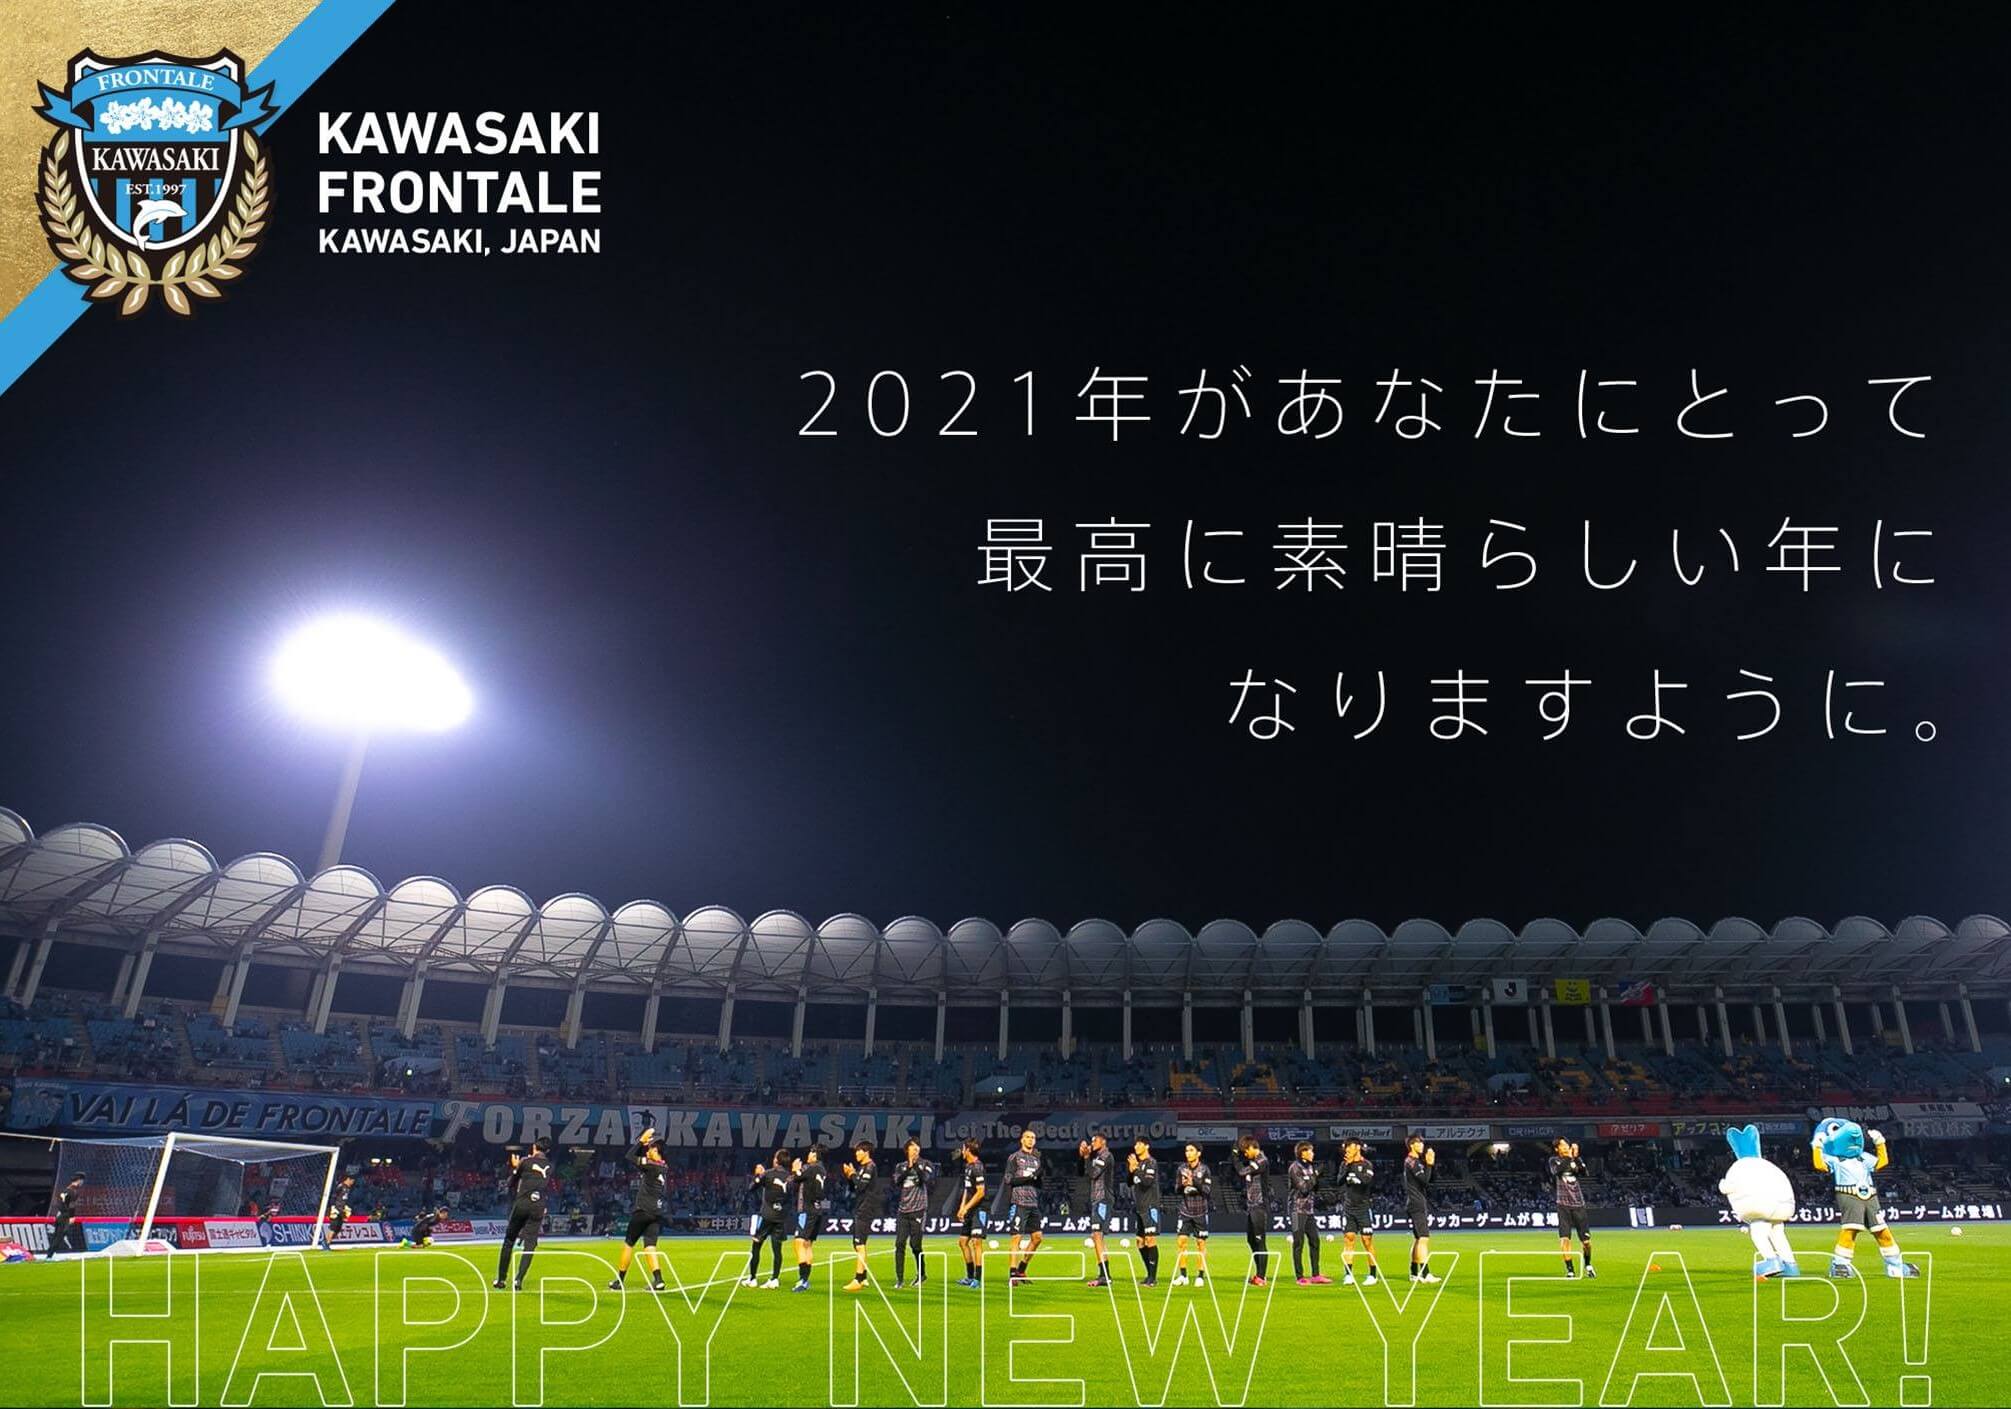 年jリーグ 天皇杯優勝の2冠王者 川崎フロンターレ とオフィシャルスポンサー契約を締結しました